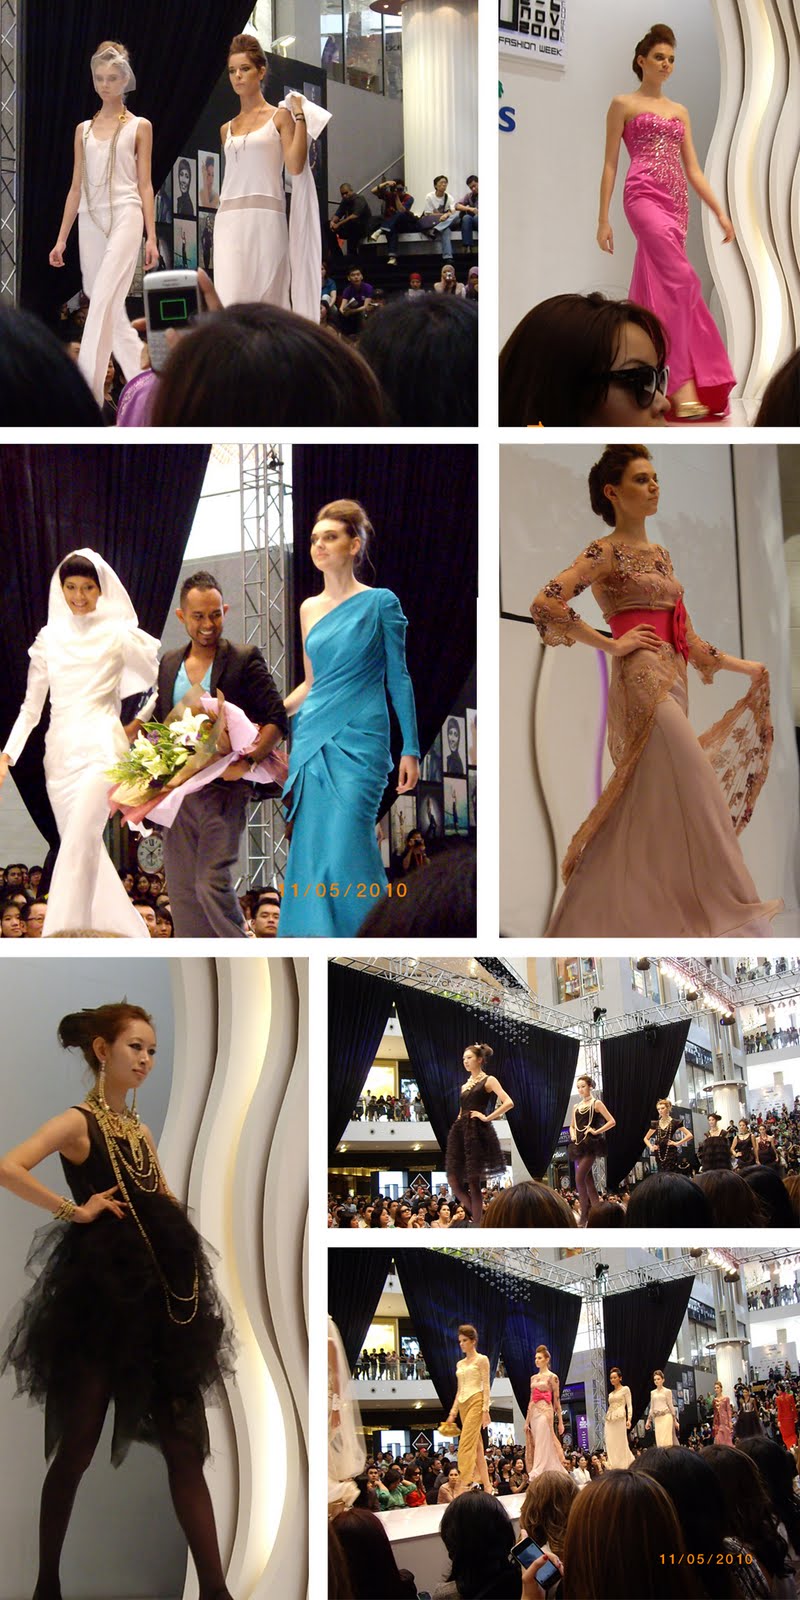 Malaysia International Fashion Week 10 - My Amethyst